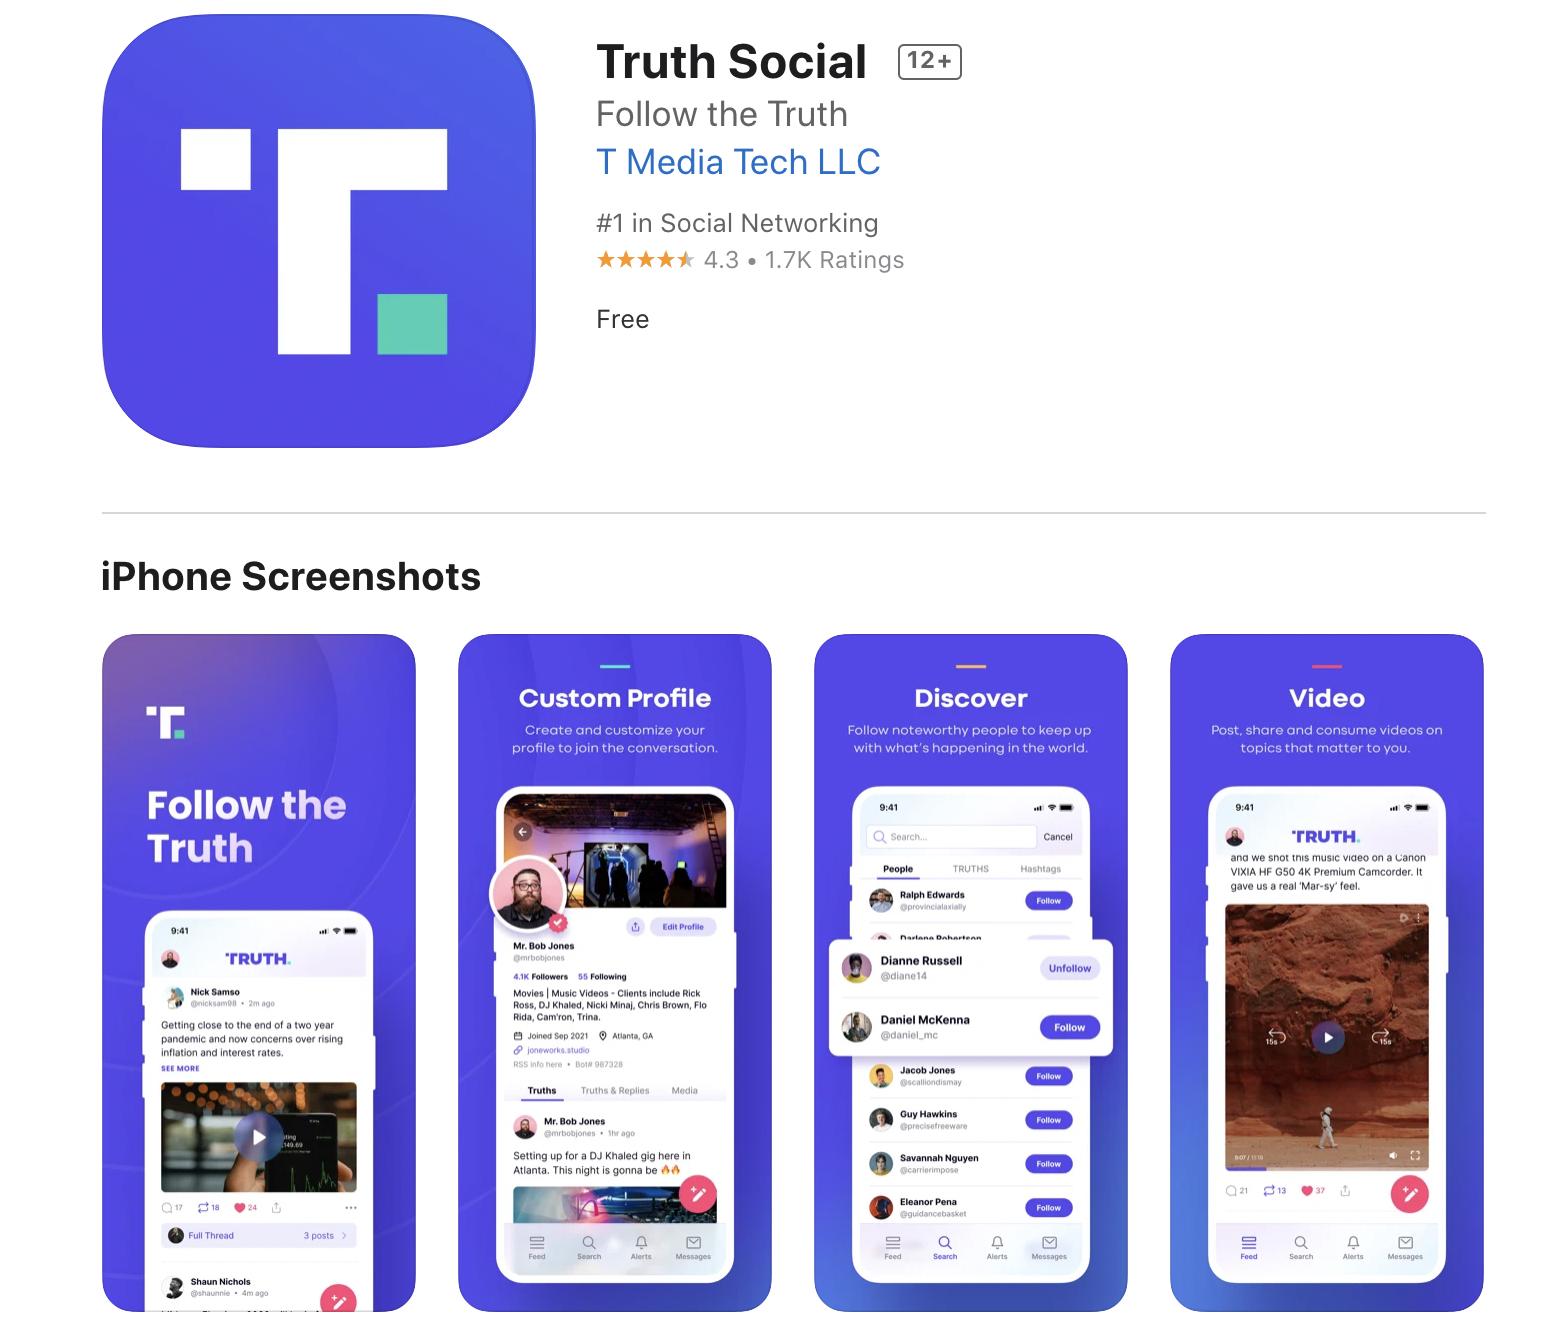 川普新創社群平台Truth Social正式上架 承諾絕不因言論封鎖用戶